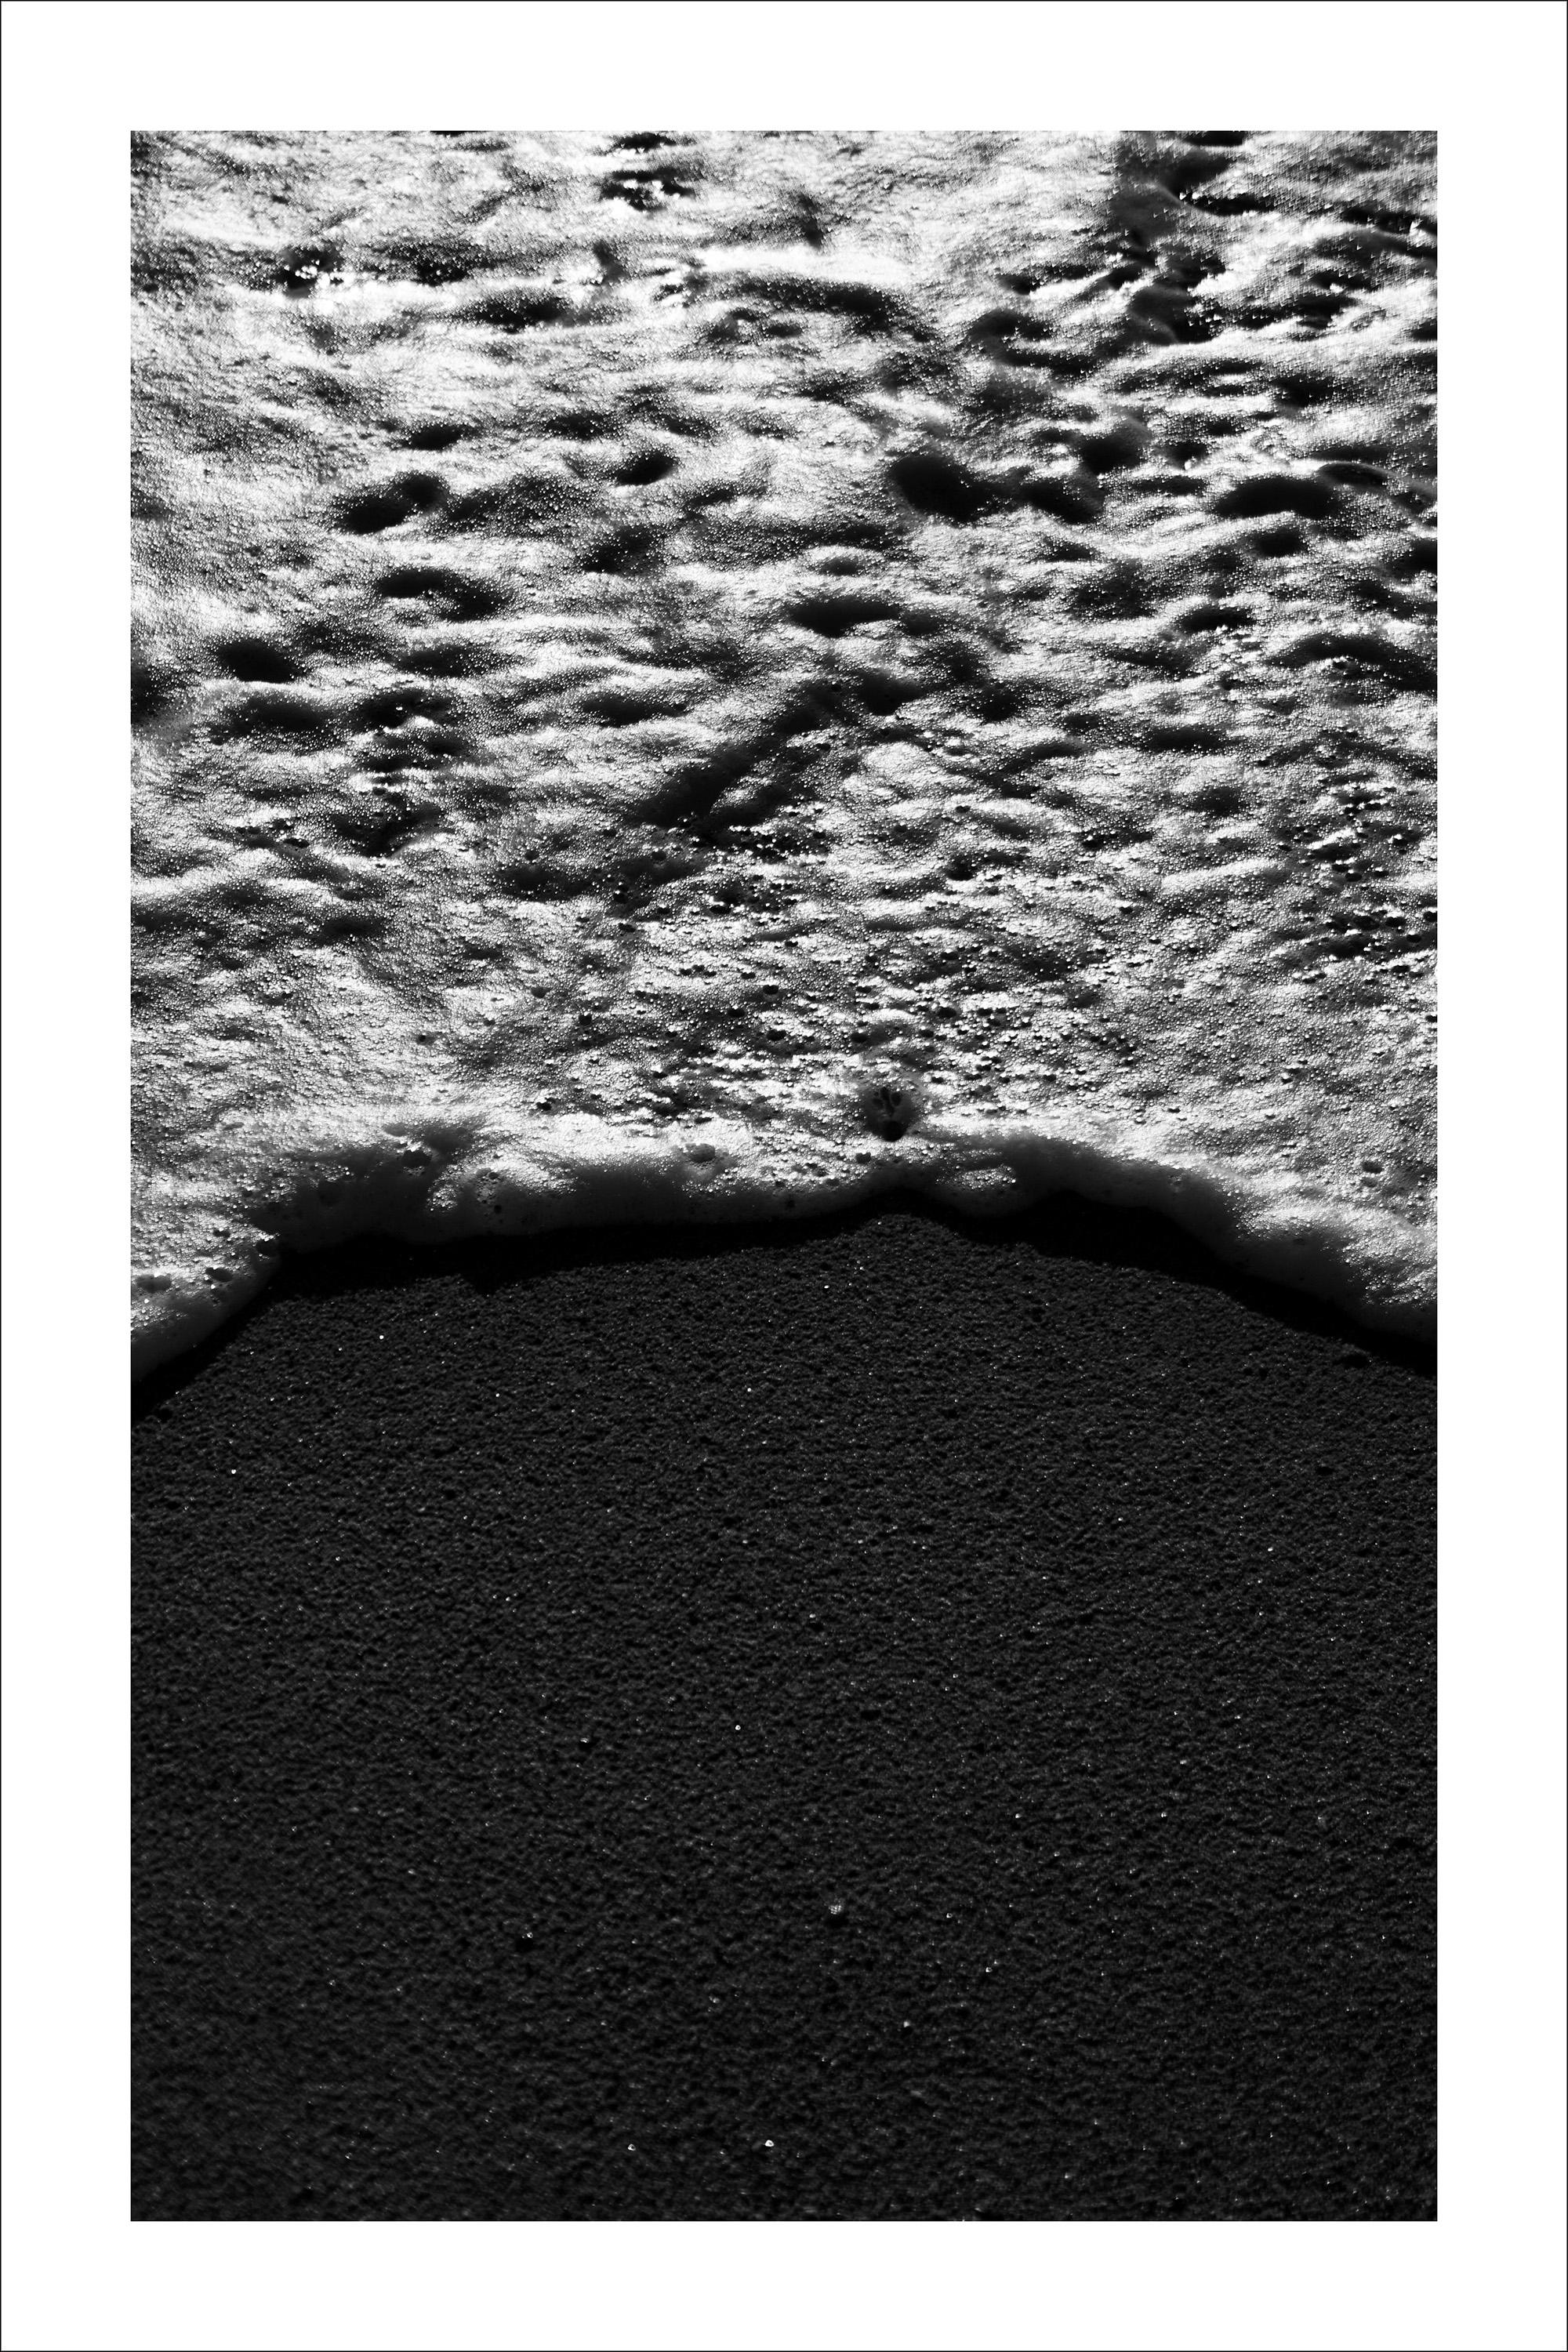 Grand paysage marin vertical noir et blanc de chauve-souris Foamy, style Sugimoto, chaussure